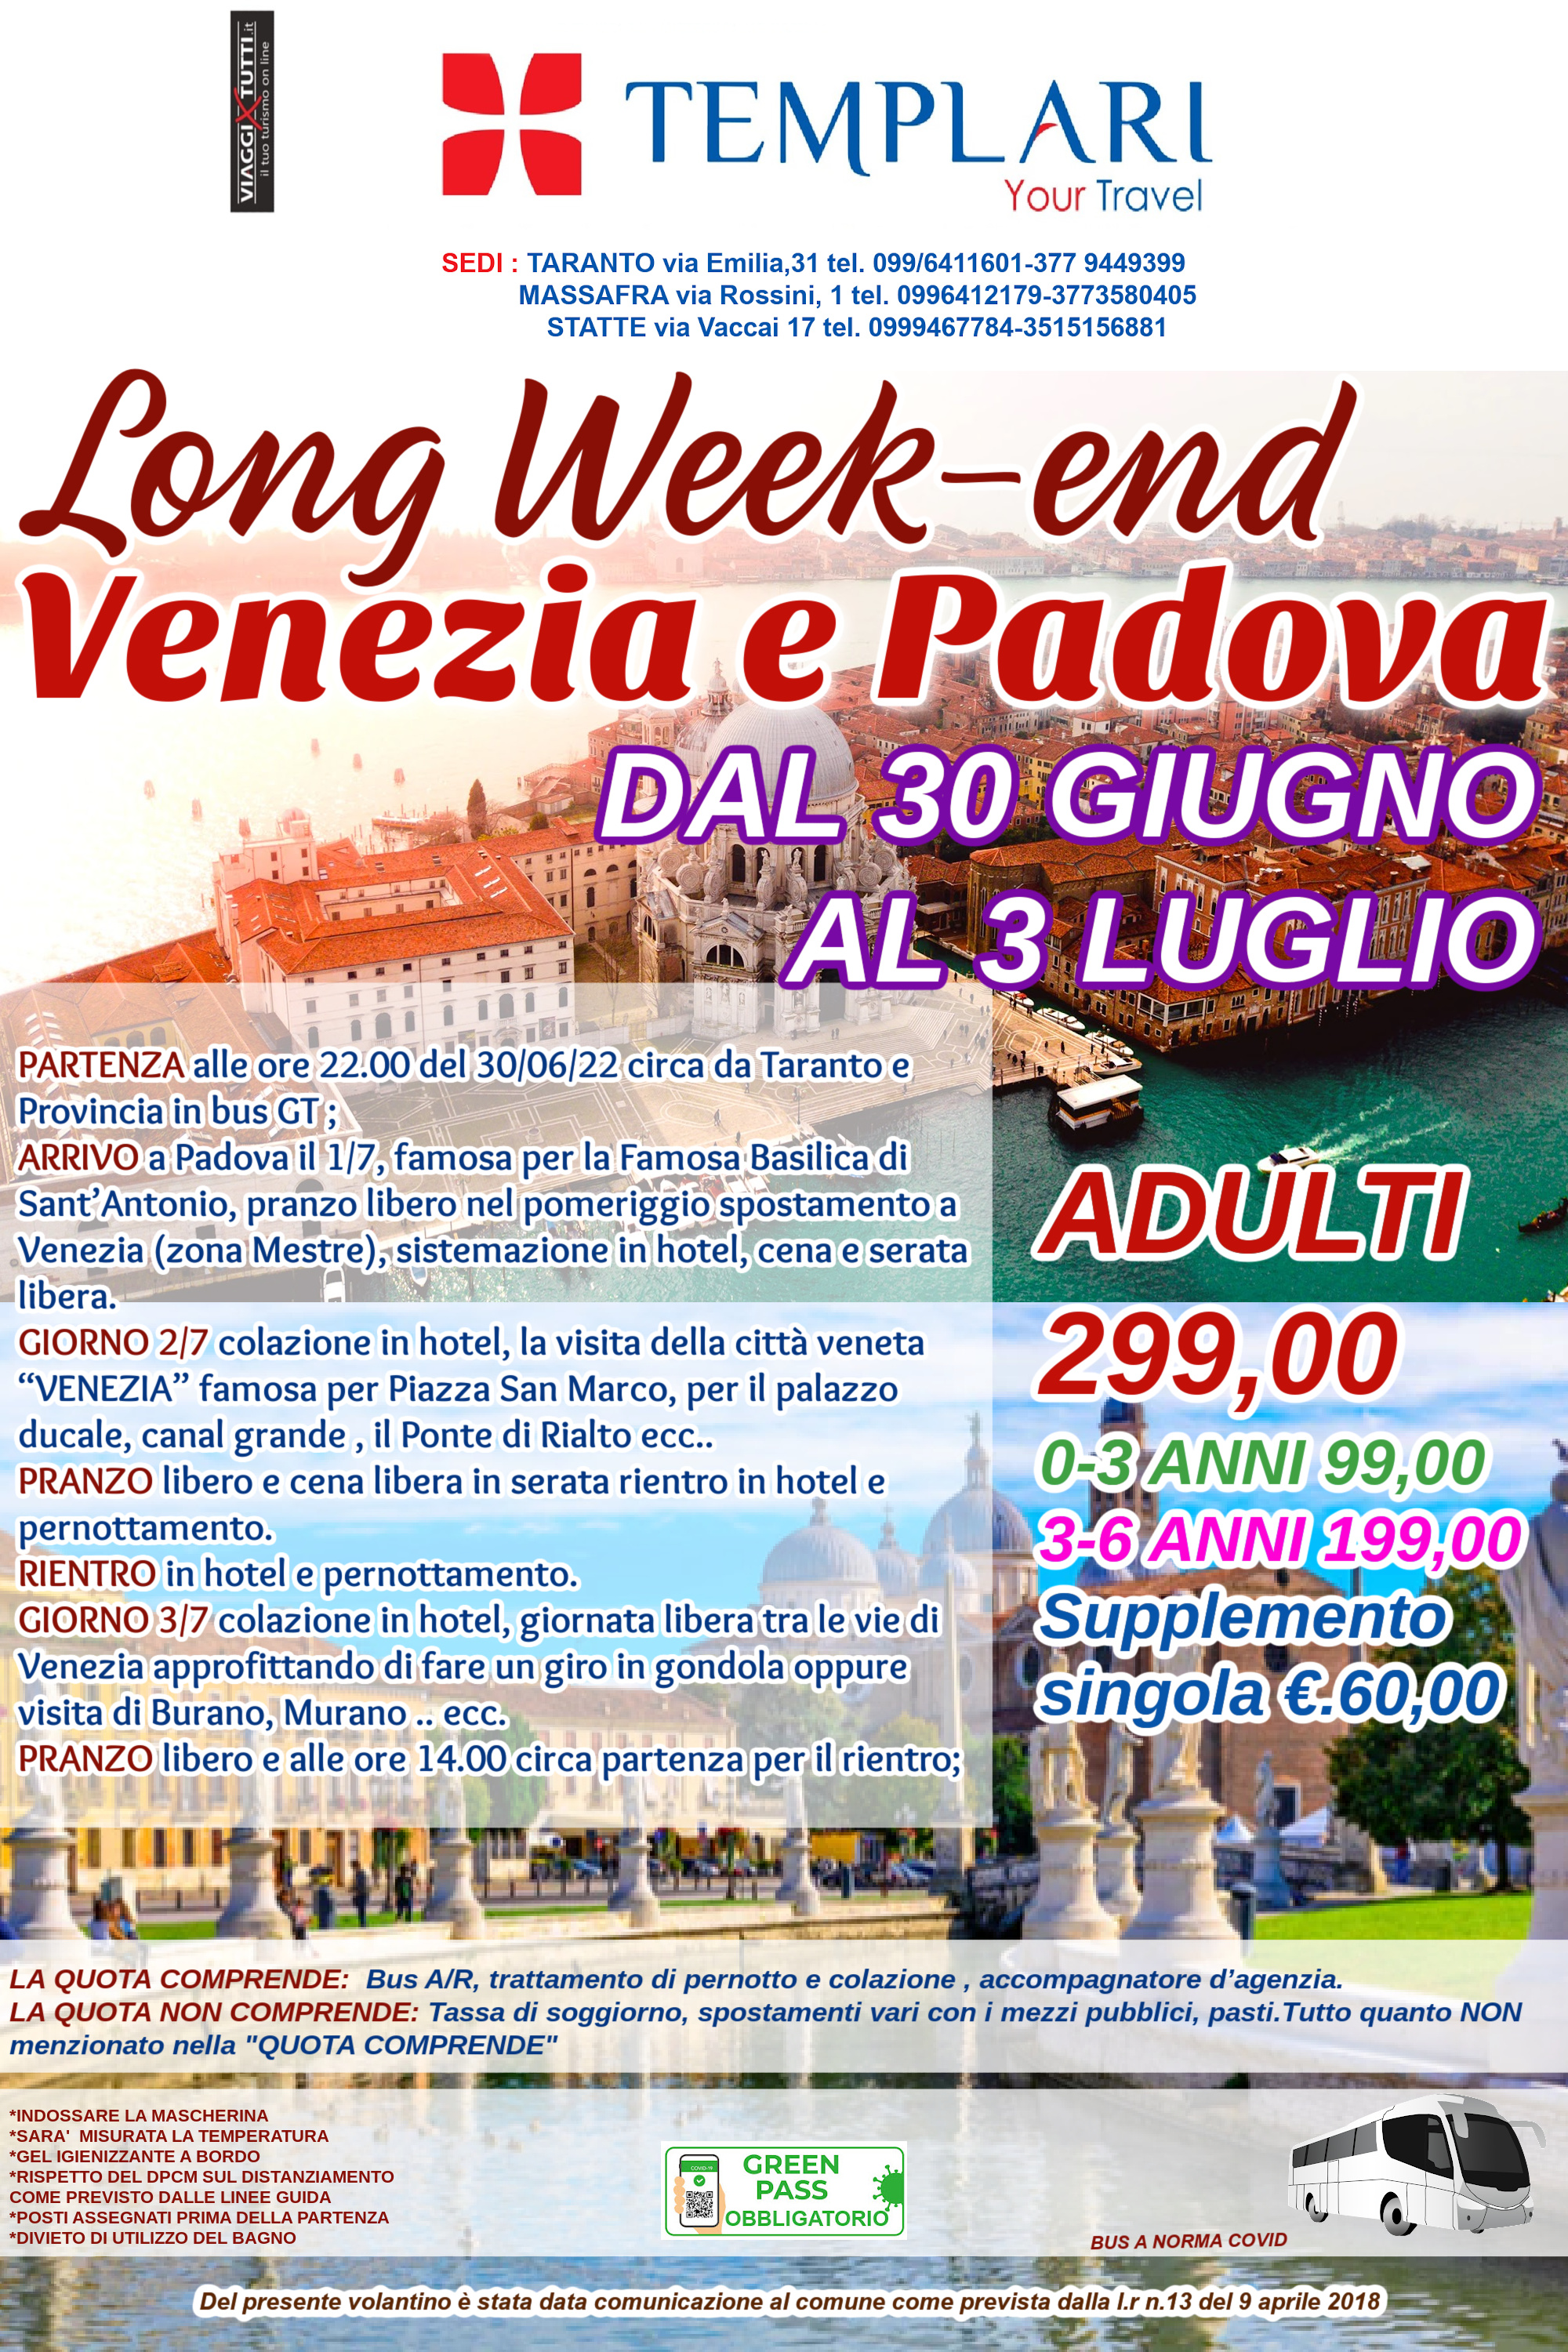 Long Week-end Venezia e Padova